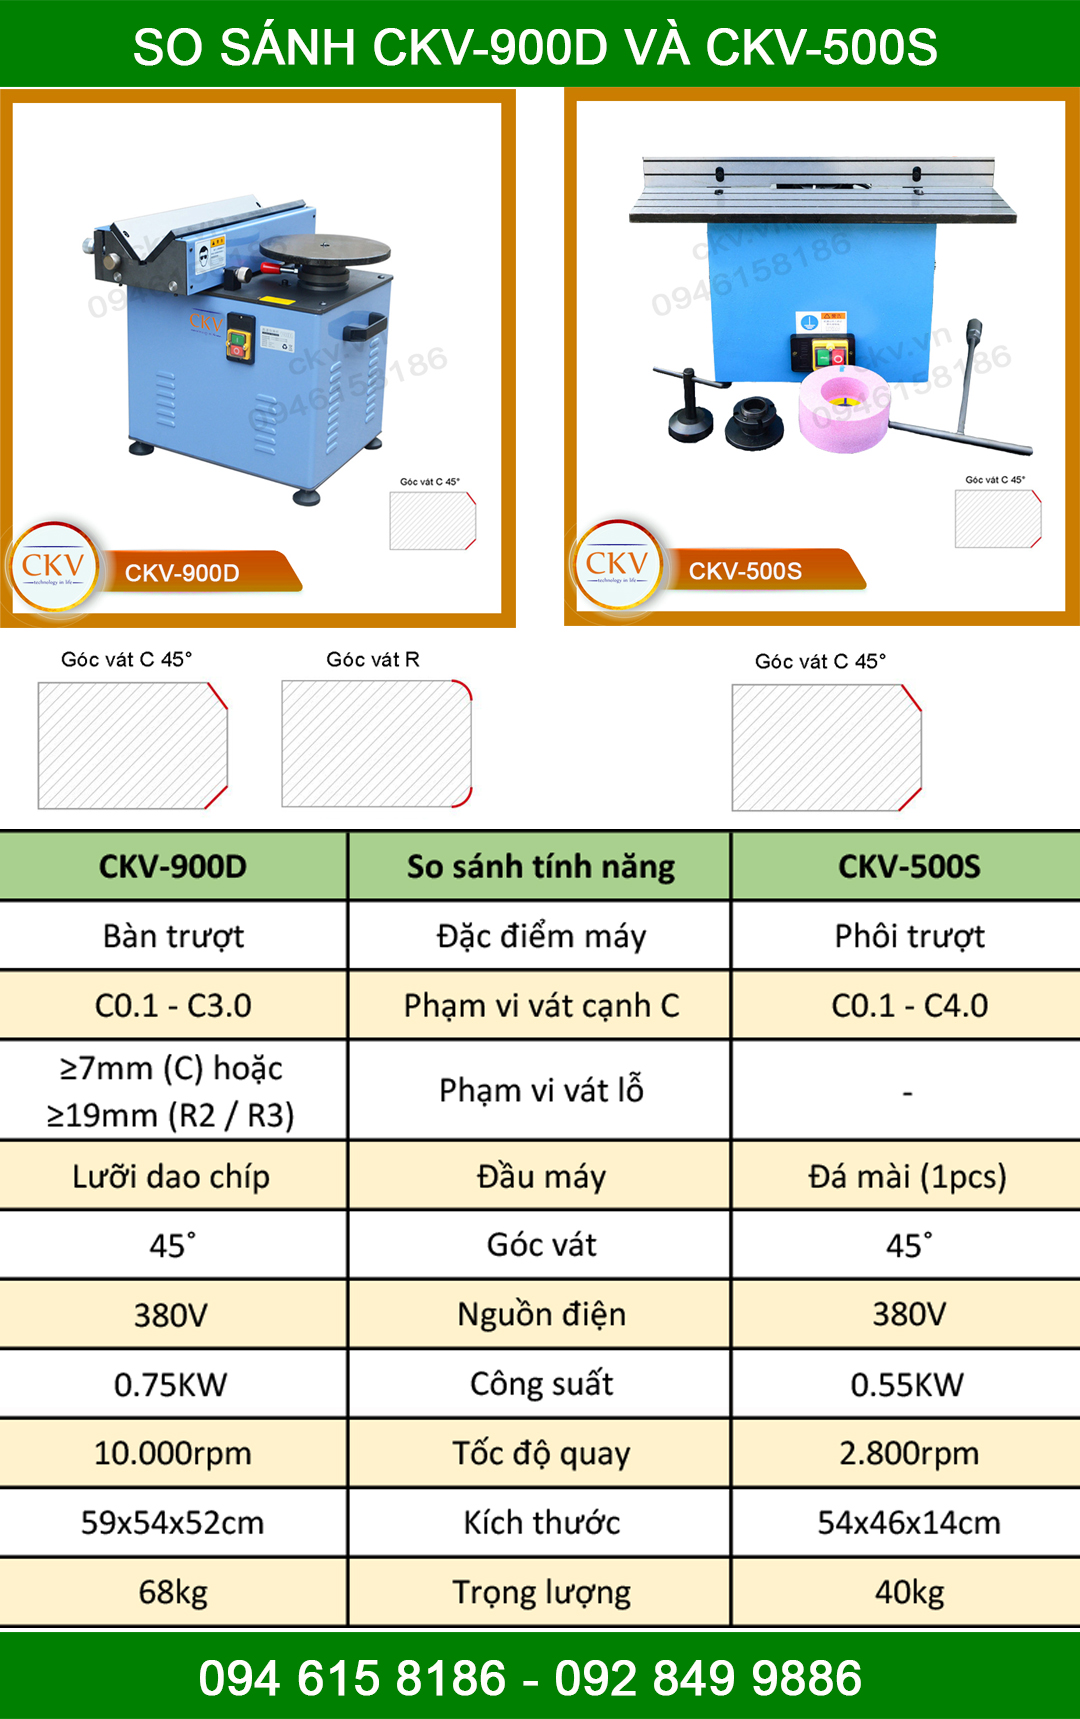 So sánh CKV-900D và CKV-500S